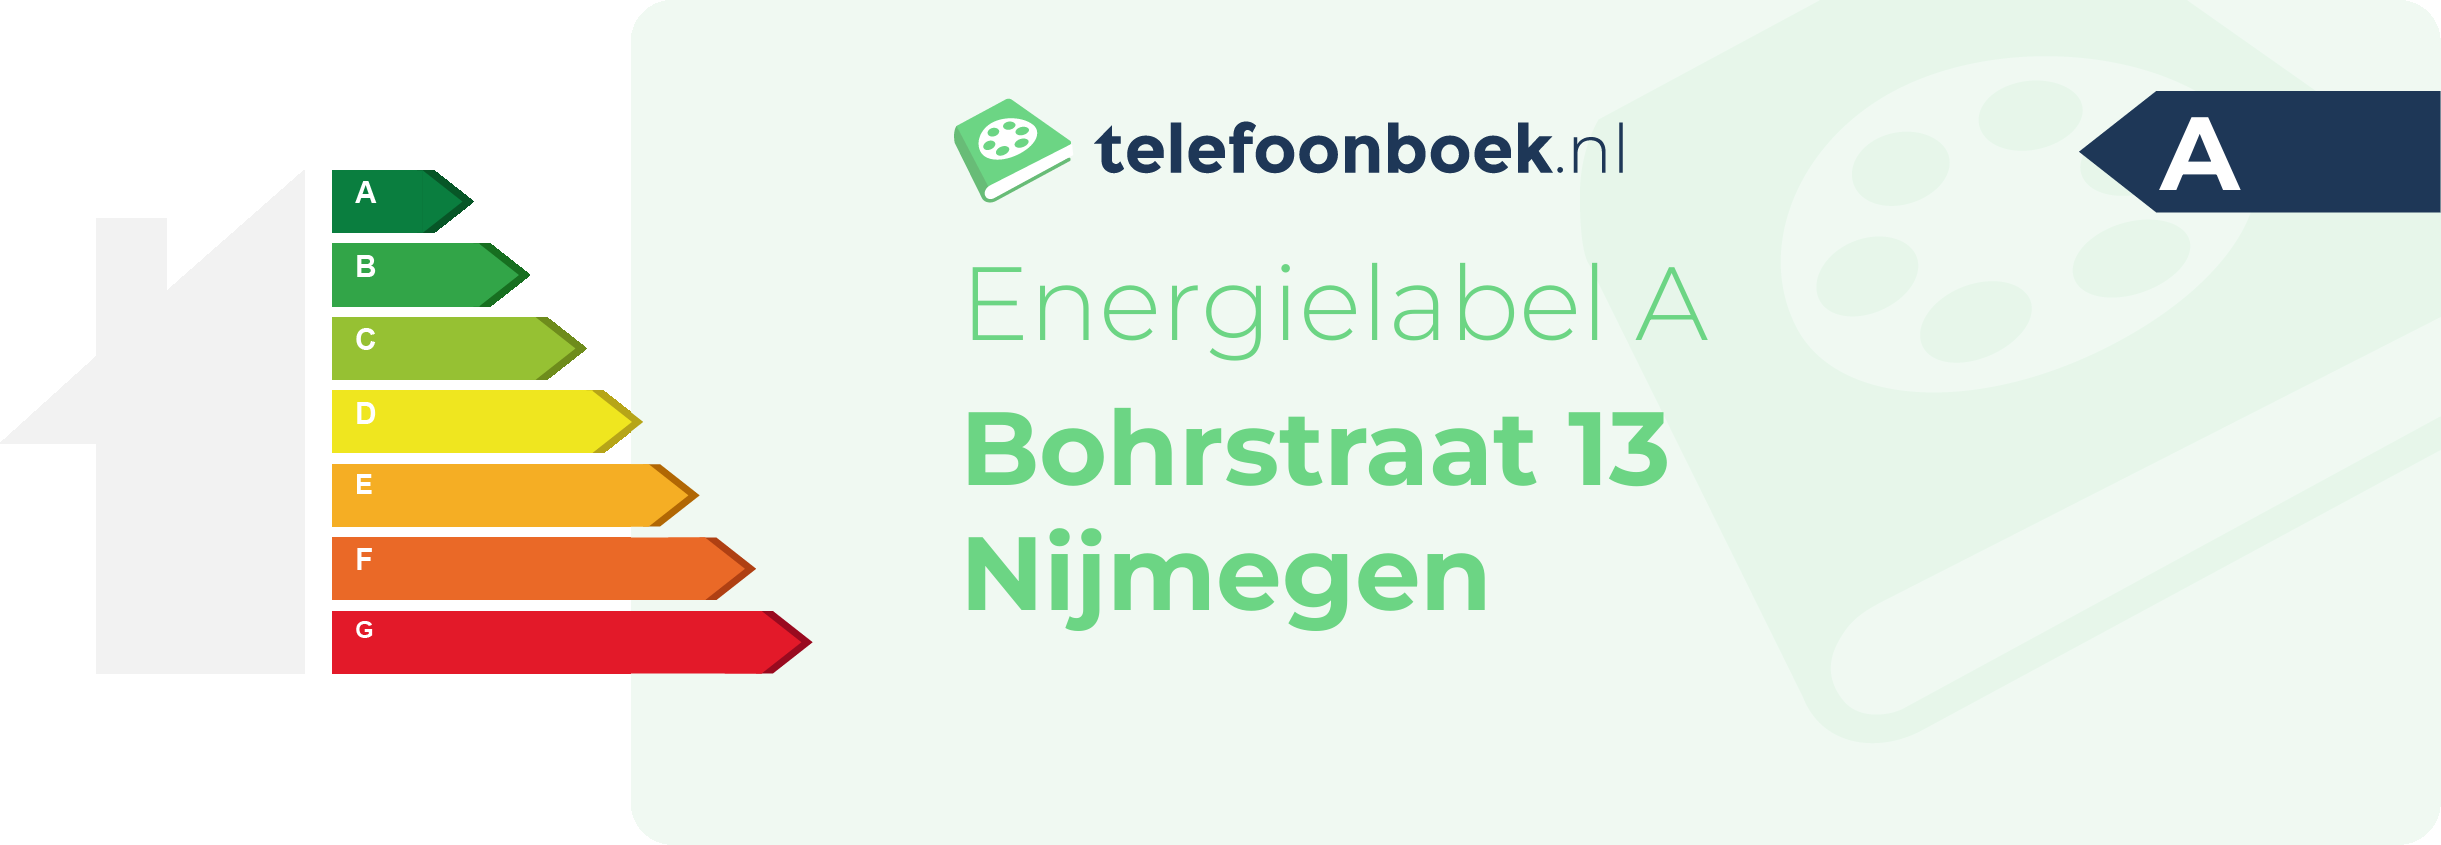 Energielabel Bohrstraat 13 Nijmegen